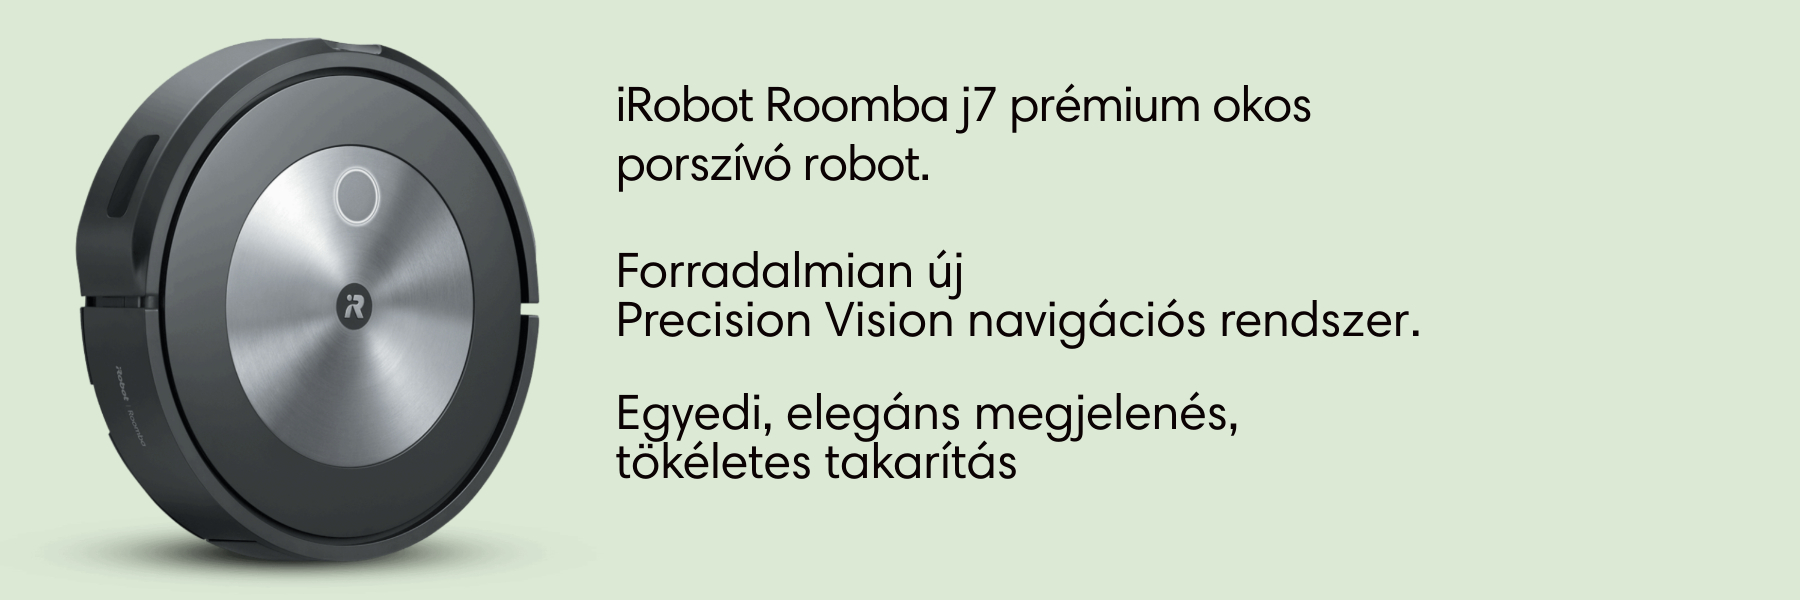 iRobot Roomba j7 robotporszívó